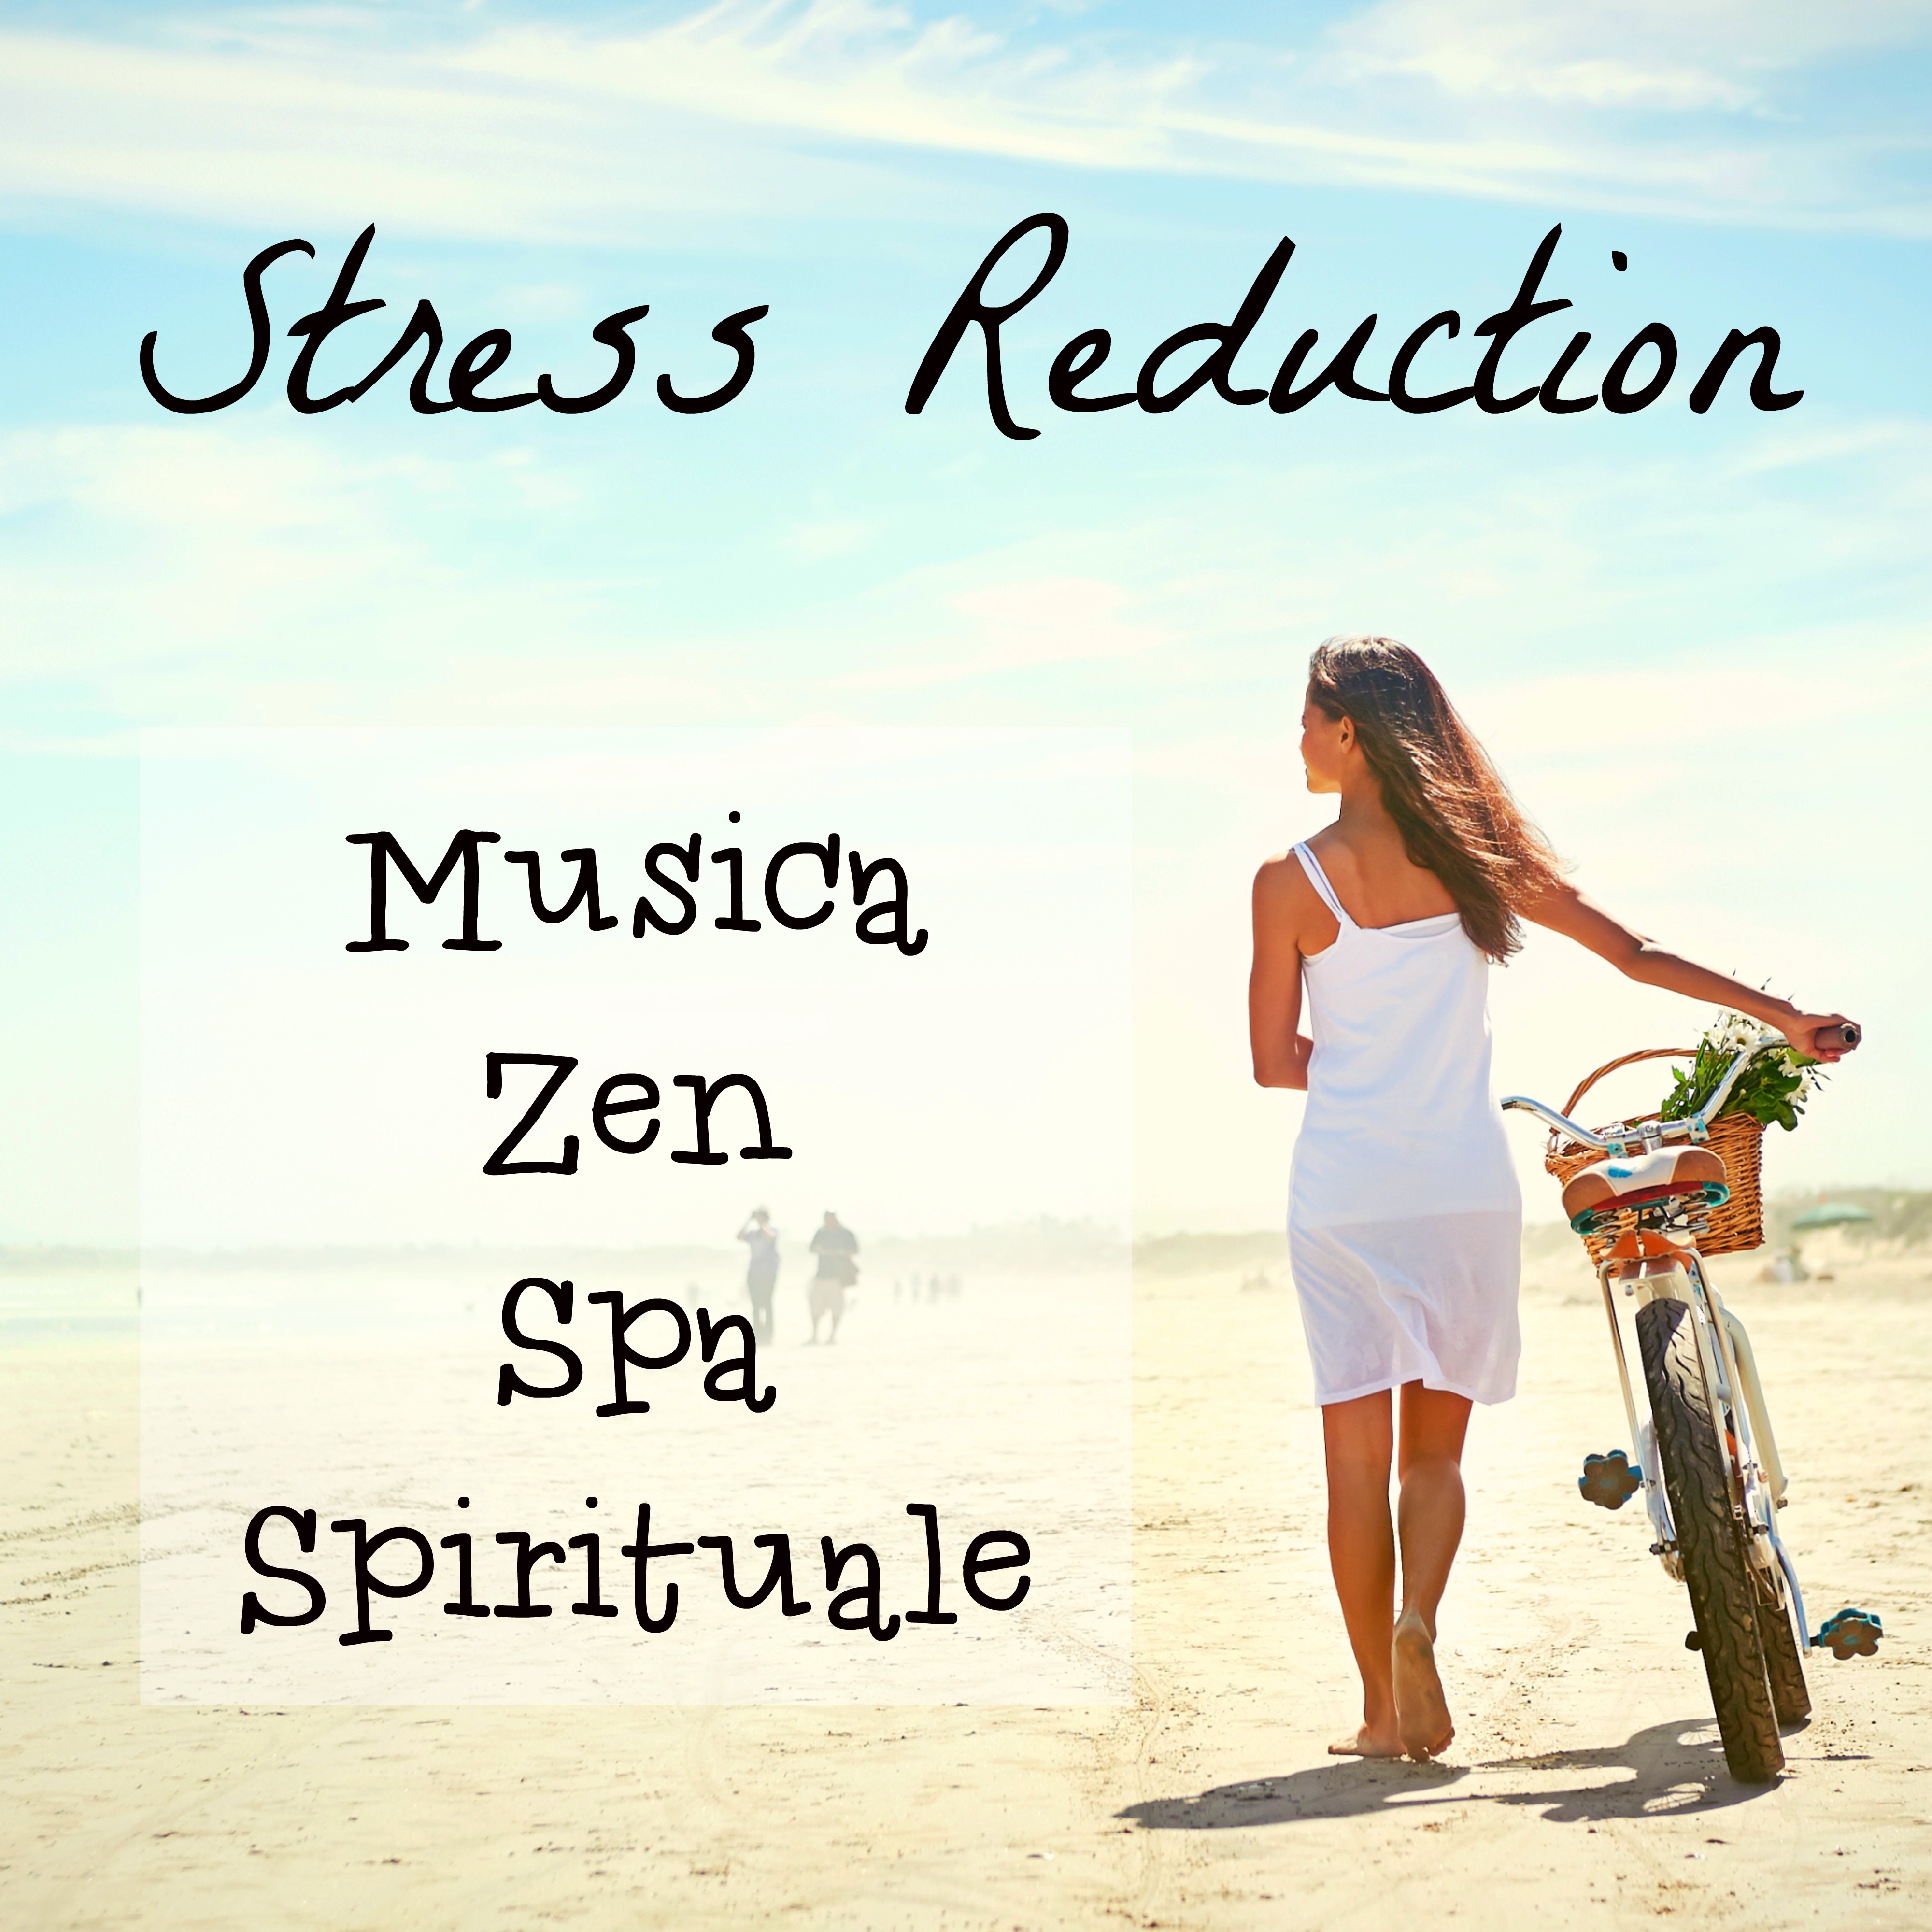 Stress Reduction - Musica Zen Spa Spirituale per Meditazione Vipassana Equilibrio Emozionale e Massoterapia con Suoni dalla Natura Strumentali New Age